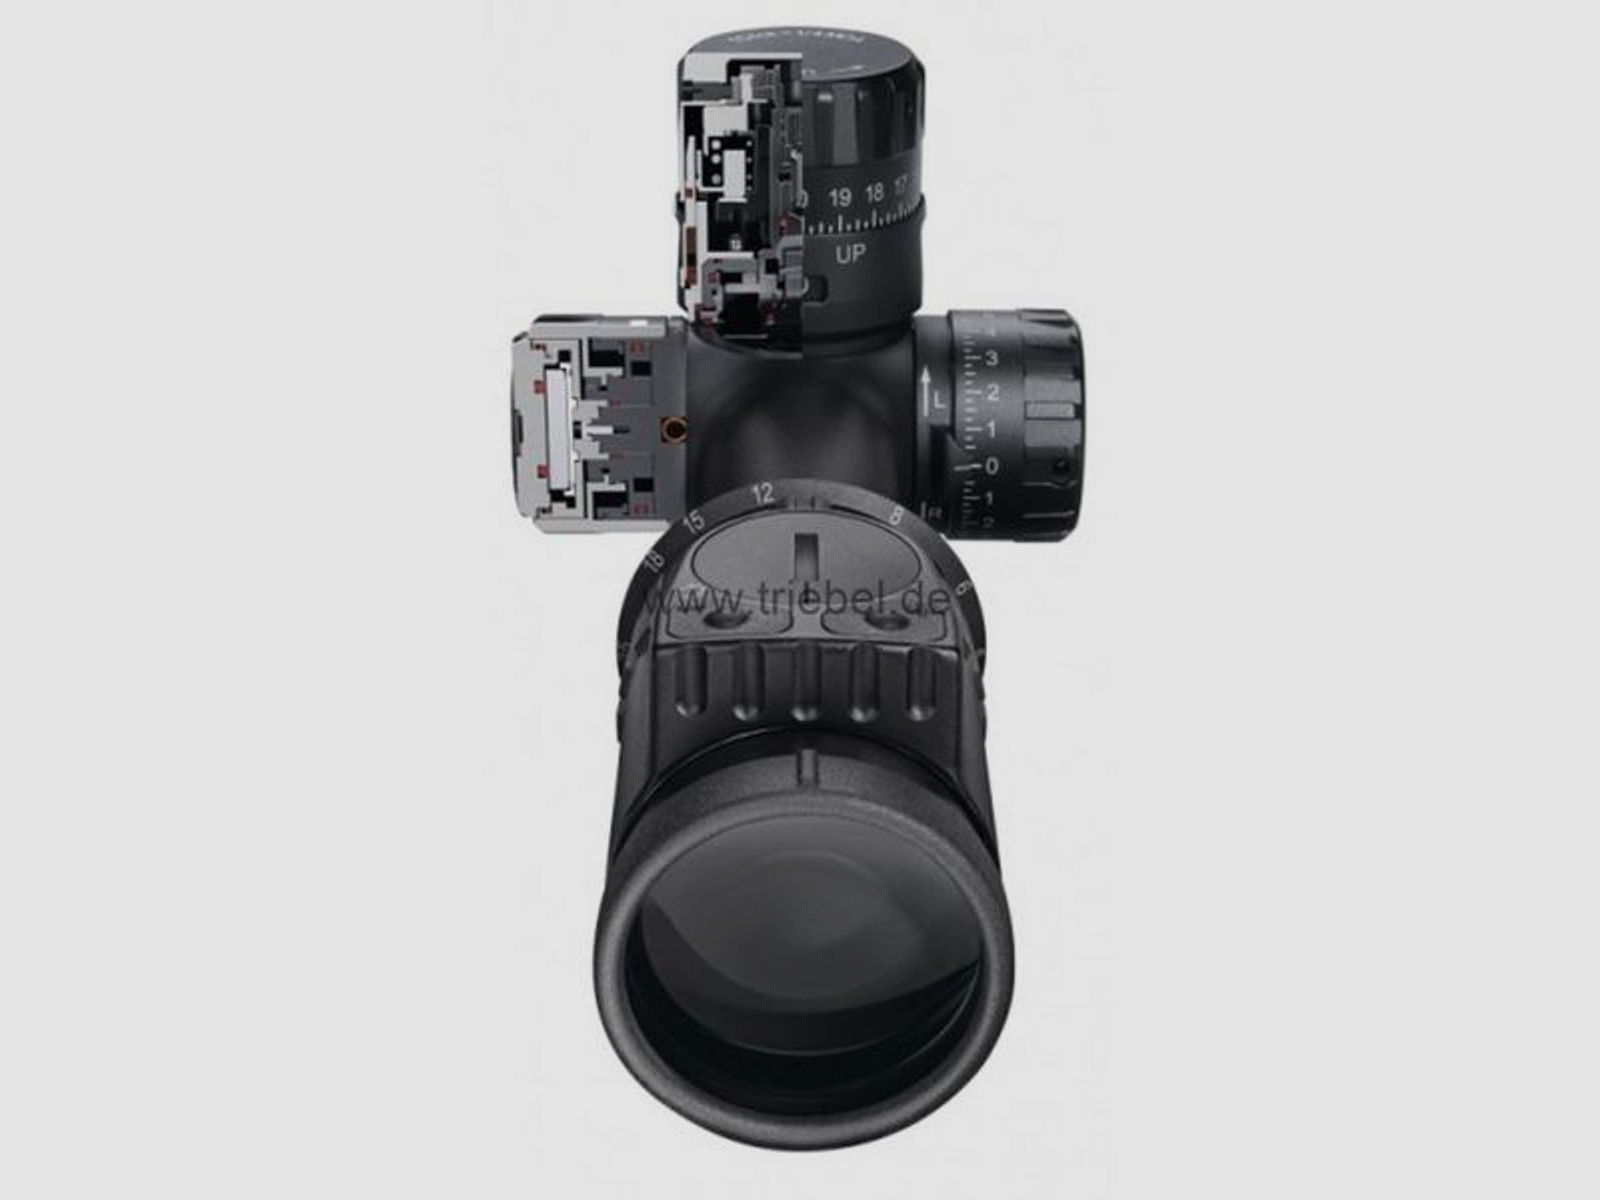 SWAROVSKI Zielfernrohr mit Leuchtabsehen 5-25x56 X5i P 1/8 MOA (30mm) Abs. Plex-I